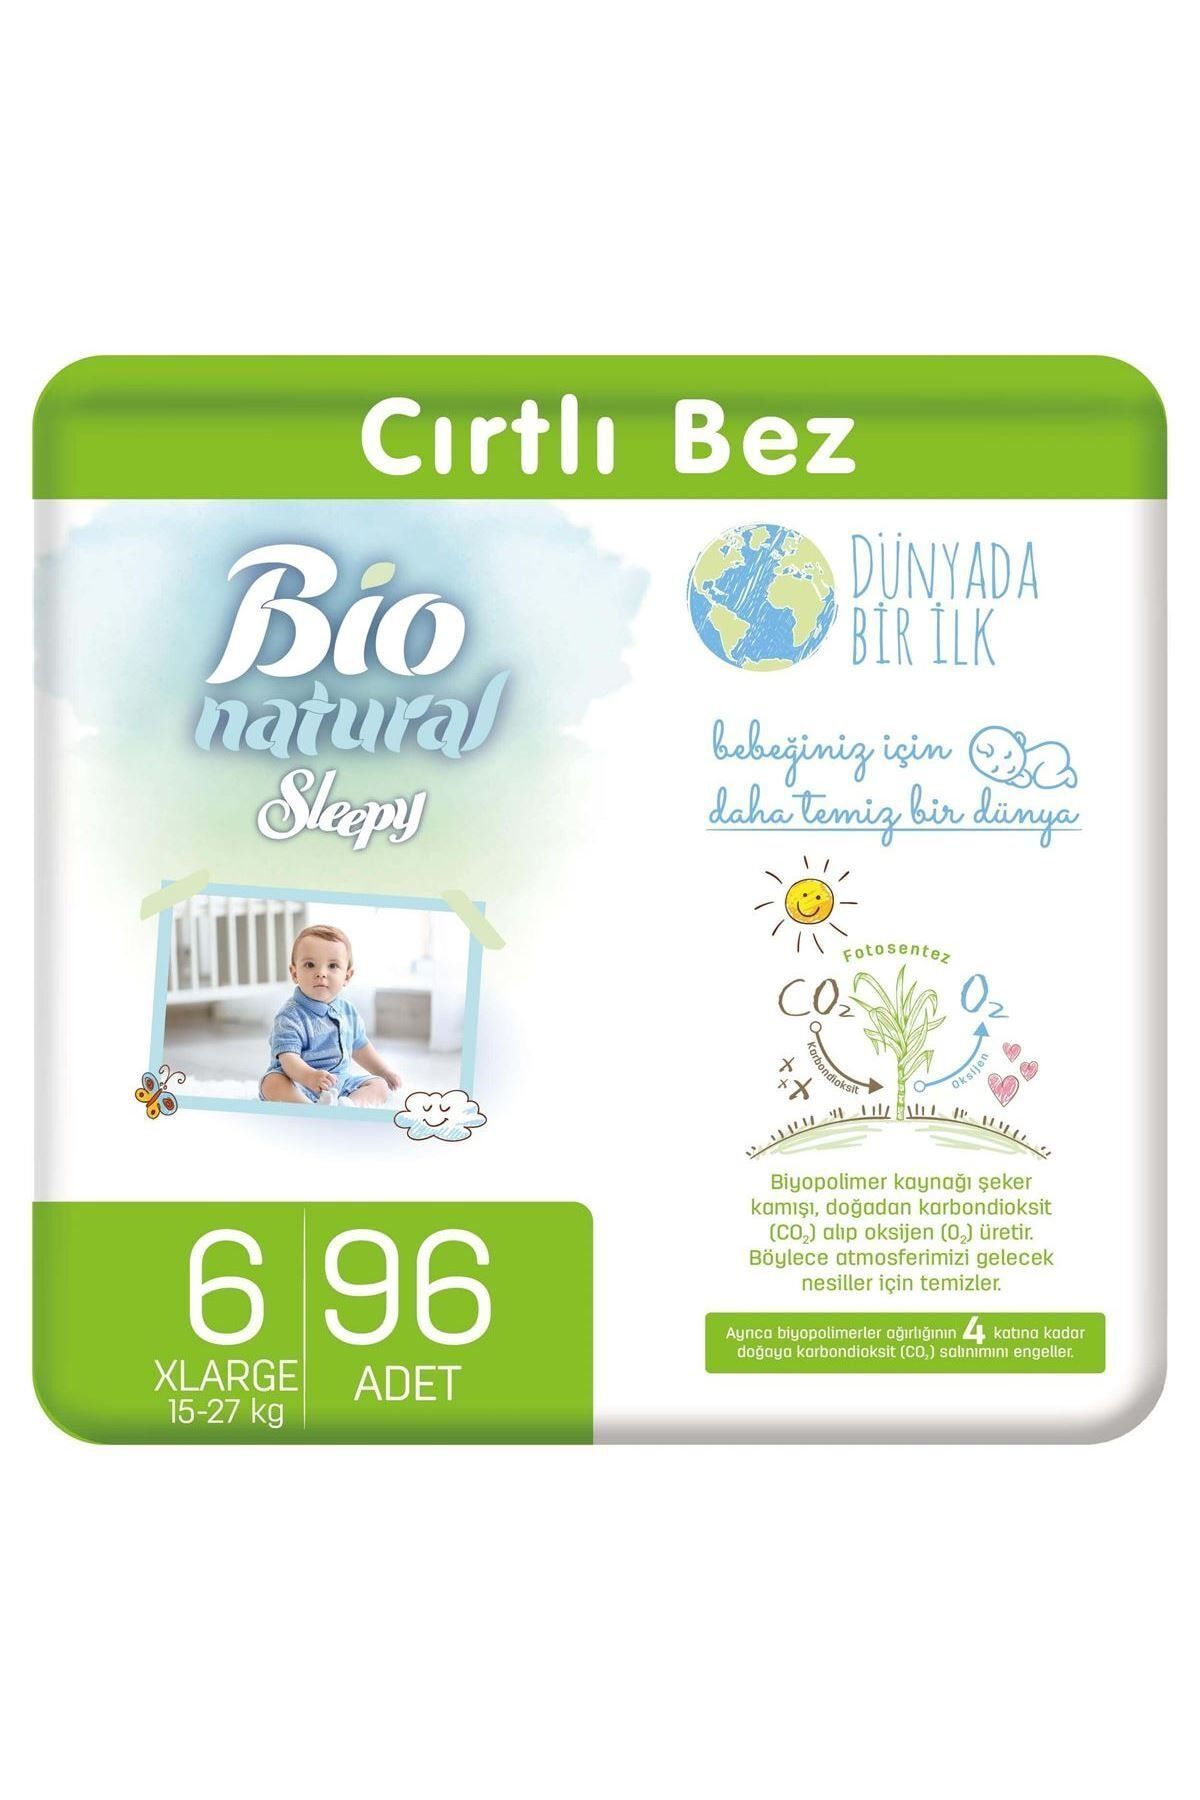 Bio natural. Sleepy Bio natural подгузники 2. Sleepy Bio natural подгузники 5. Sleepy Bio natural подгузники 3. Sleepy Bio natural подгузники 4.